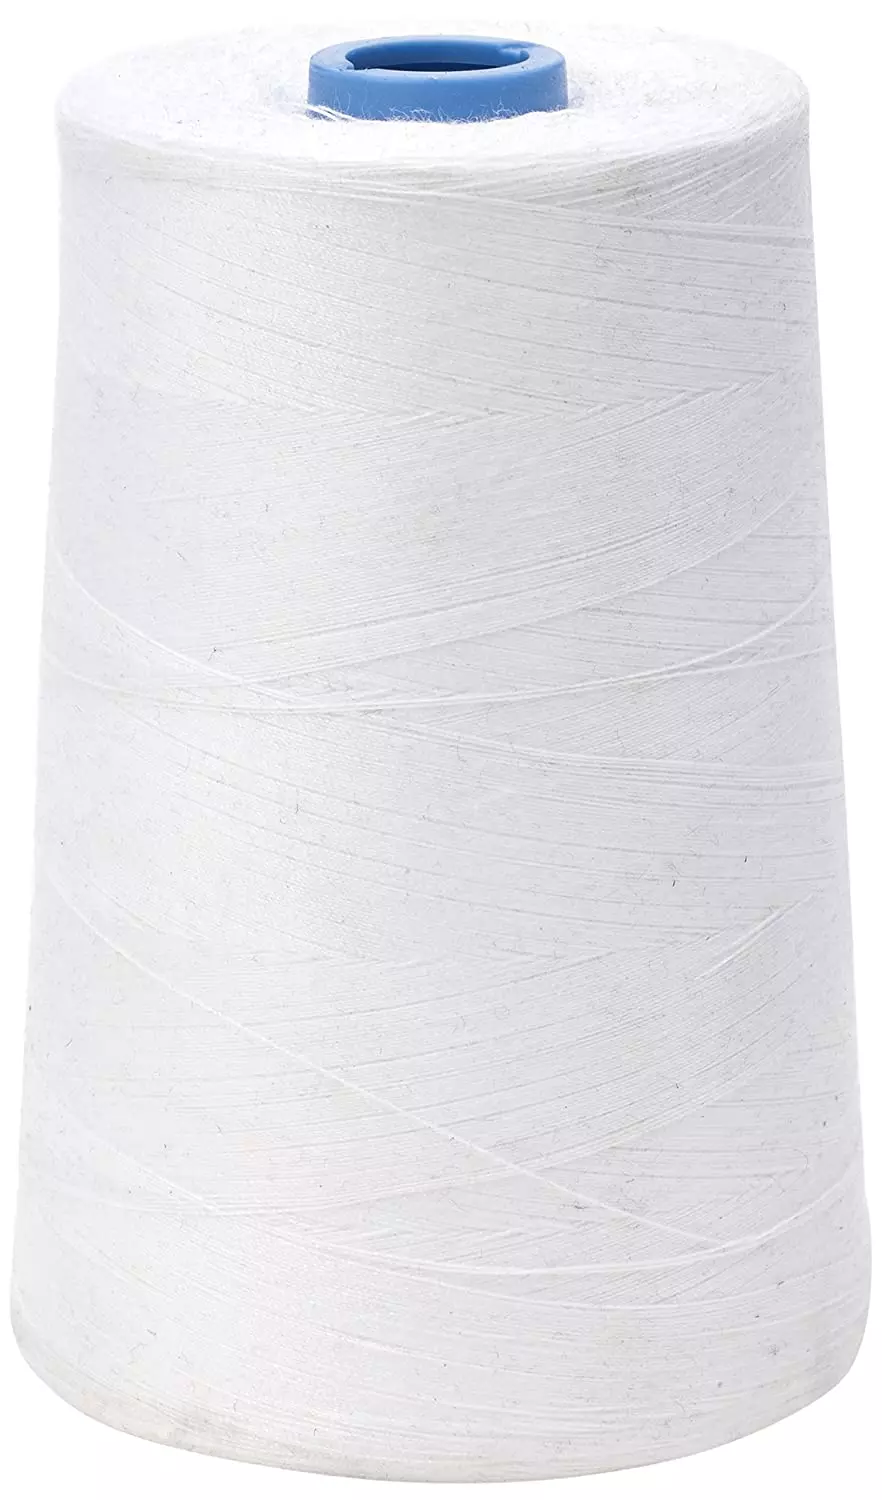 Buy Cotton White Thread Online for Best Price - ePoojaStore 